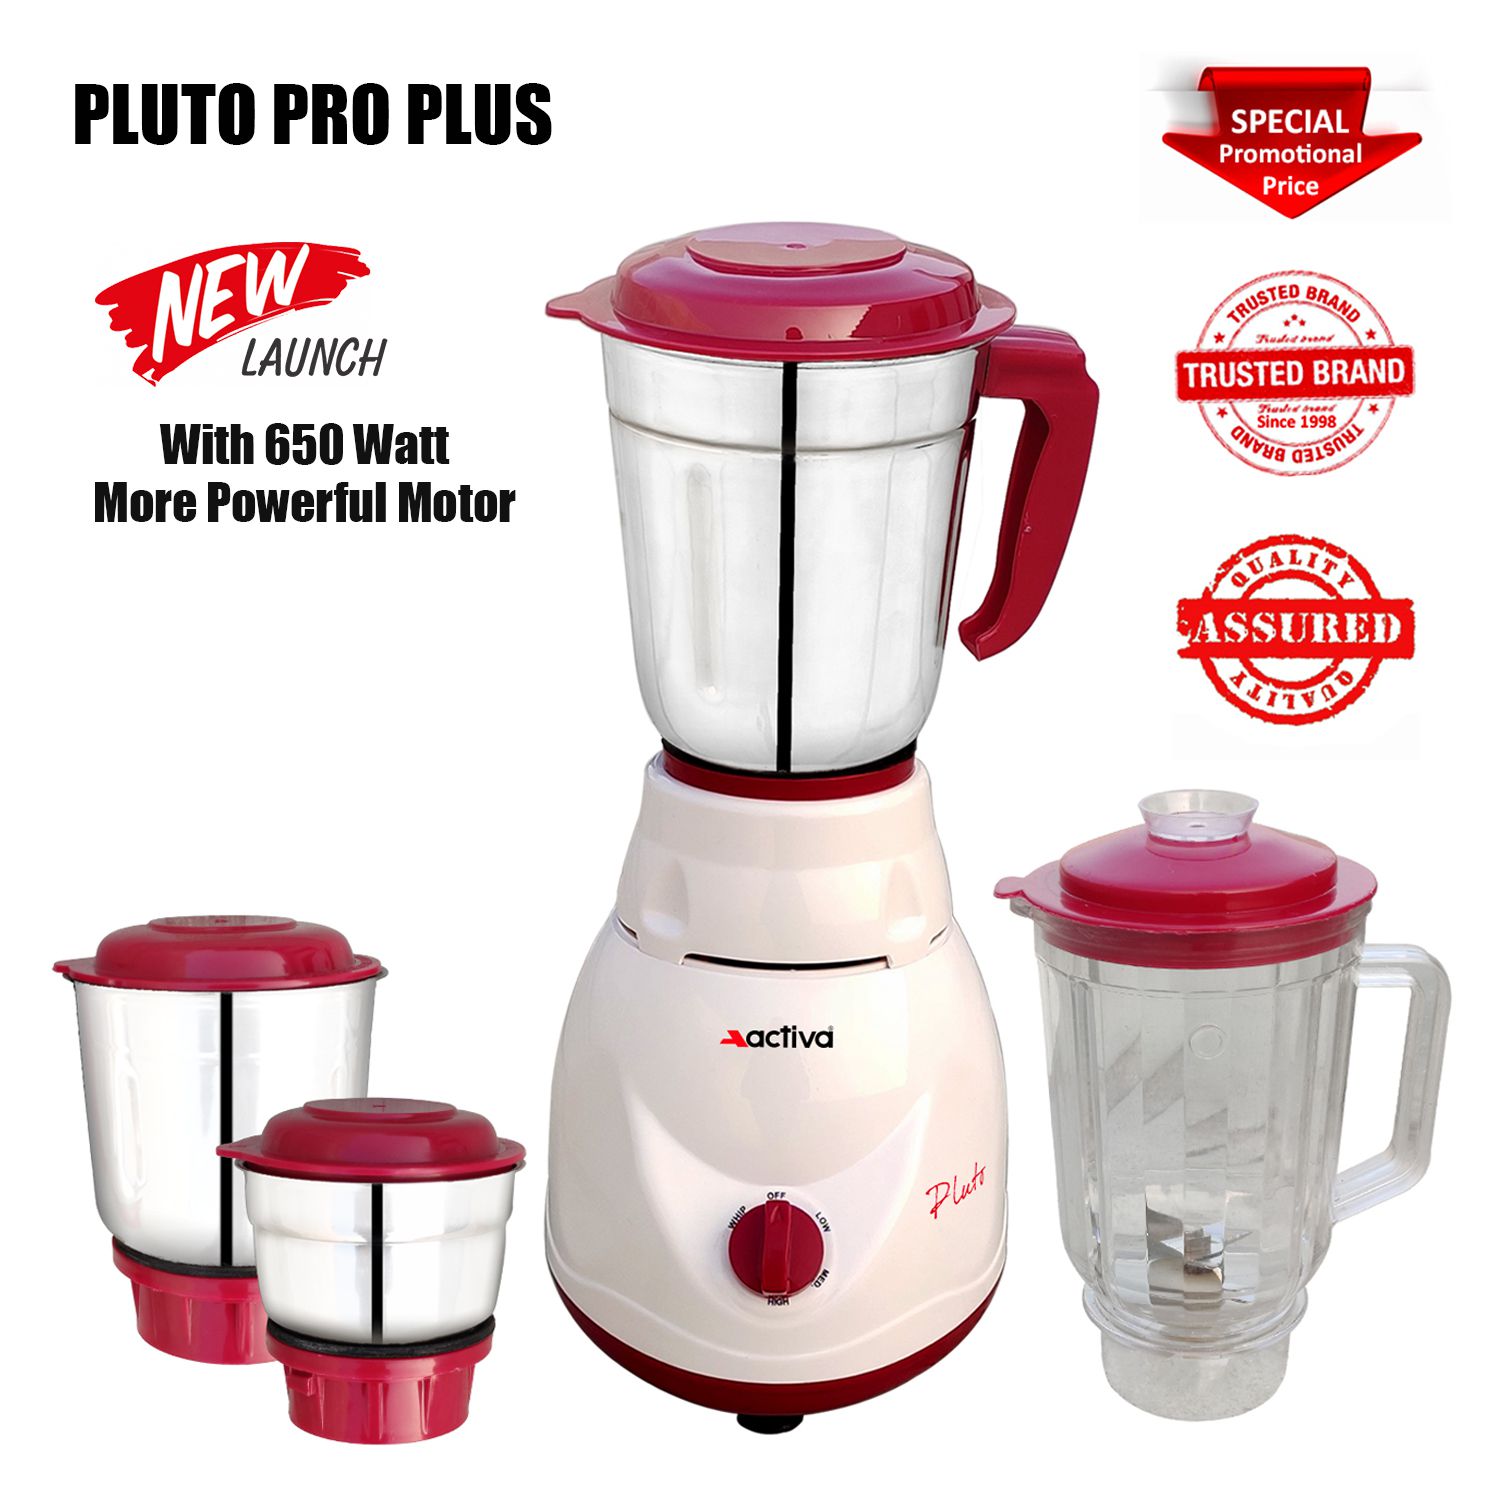     			Activa Pluto Pro Plus 650 Watt 4 Jar Mixer Grinder